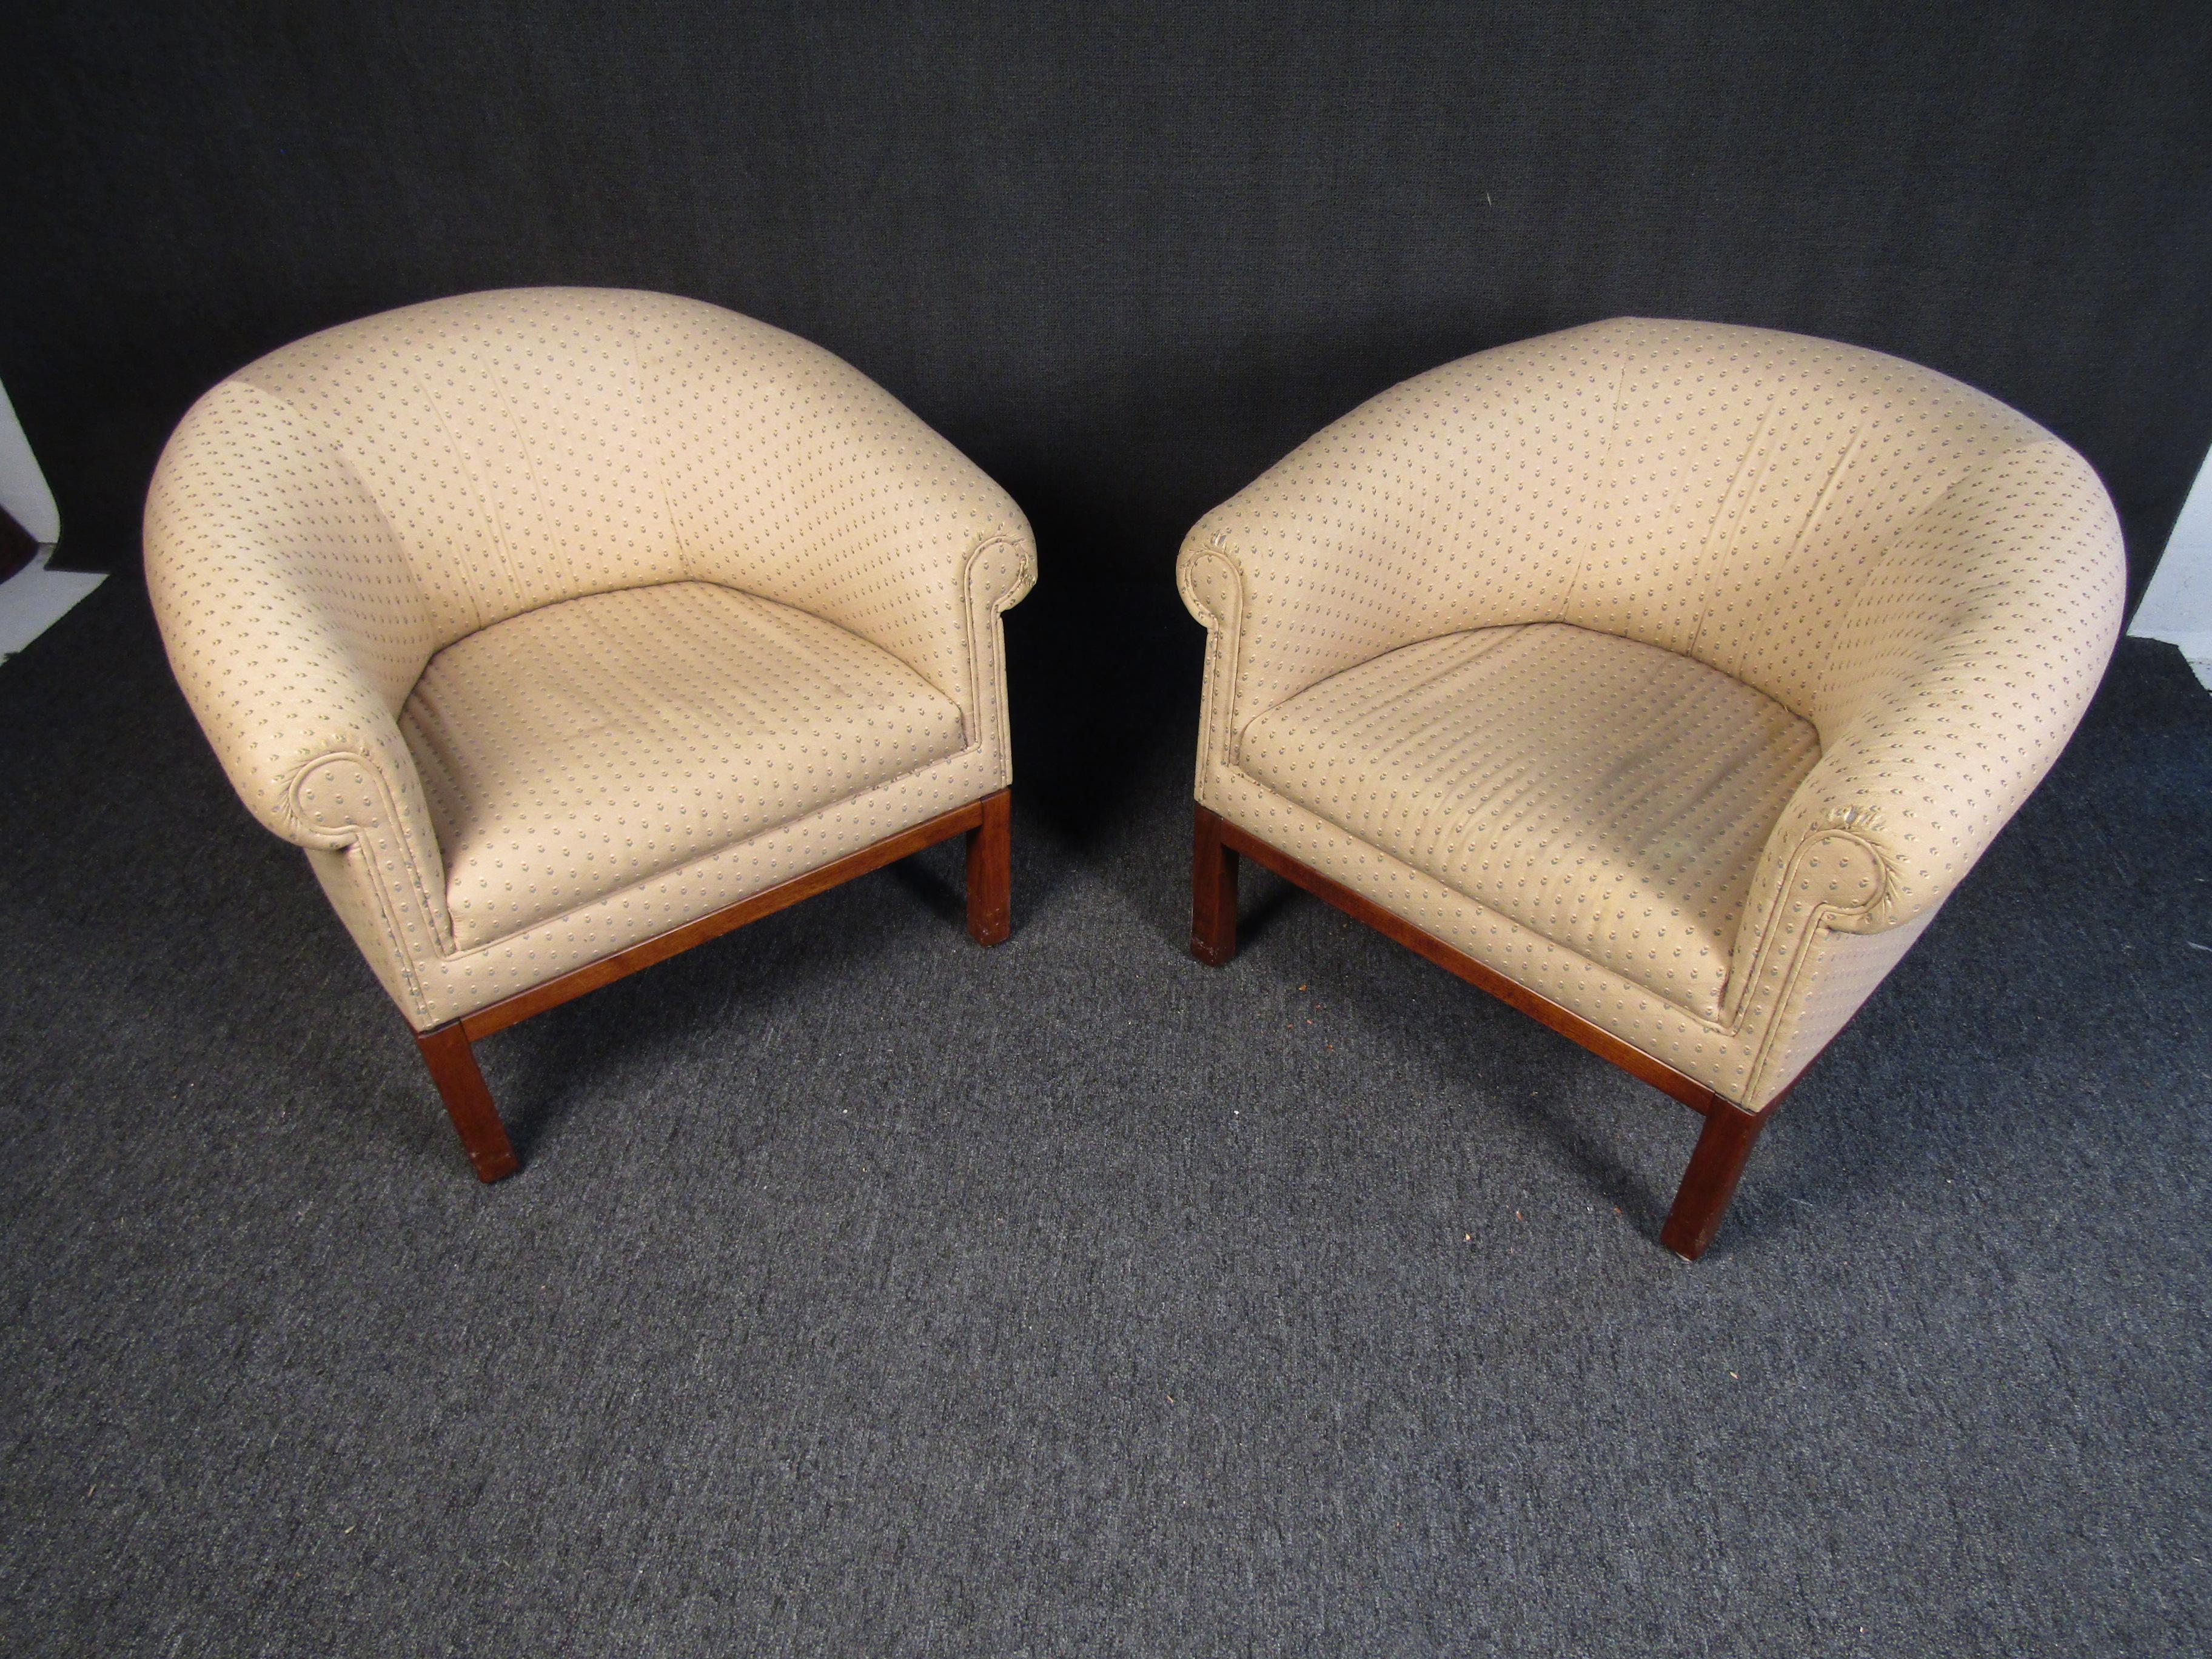 Une paire de chaises longues modernes du milieu du siècle qui présentent un rembourrage subtil mais élégant, complété par un cadre et des pieds en bois. La forme arrondie et coussinée des chaises offre un confort dans le style classique Mid-Century.